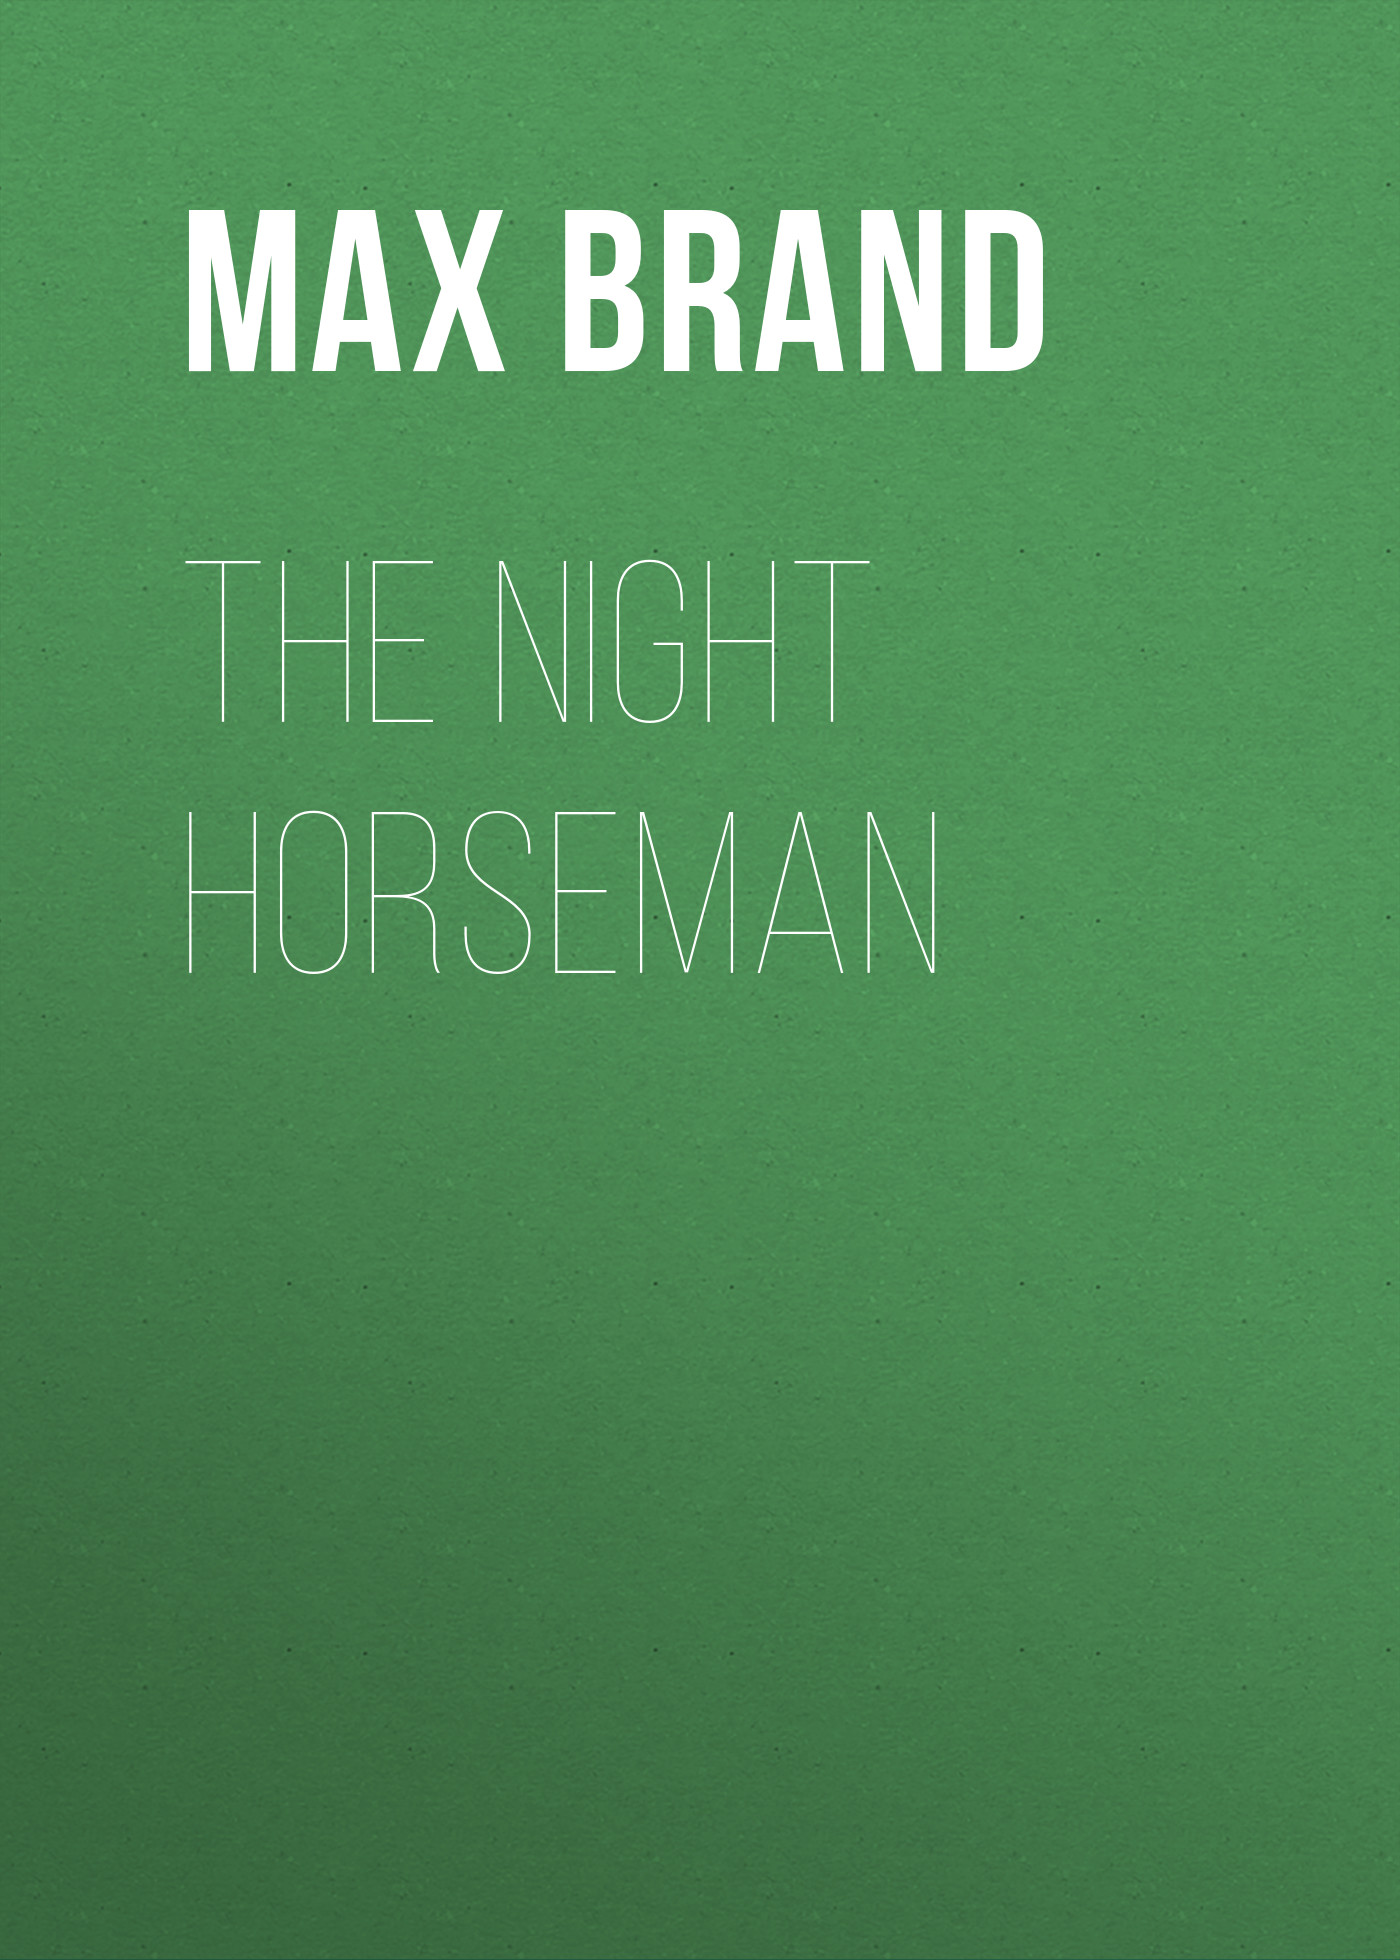 Книга The Night Horseman из серии , созданная Max Brand, может относится к жанру Зарубежная классика, Литература 20 века, Зарубежная старинная литература. Стоимость электронной книги The Night Horseman с идентификатором 42627531 составляет 0 руб.